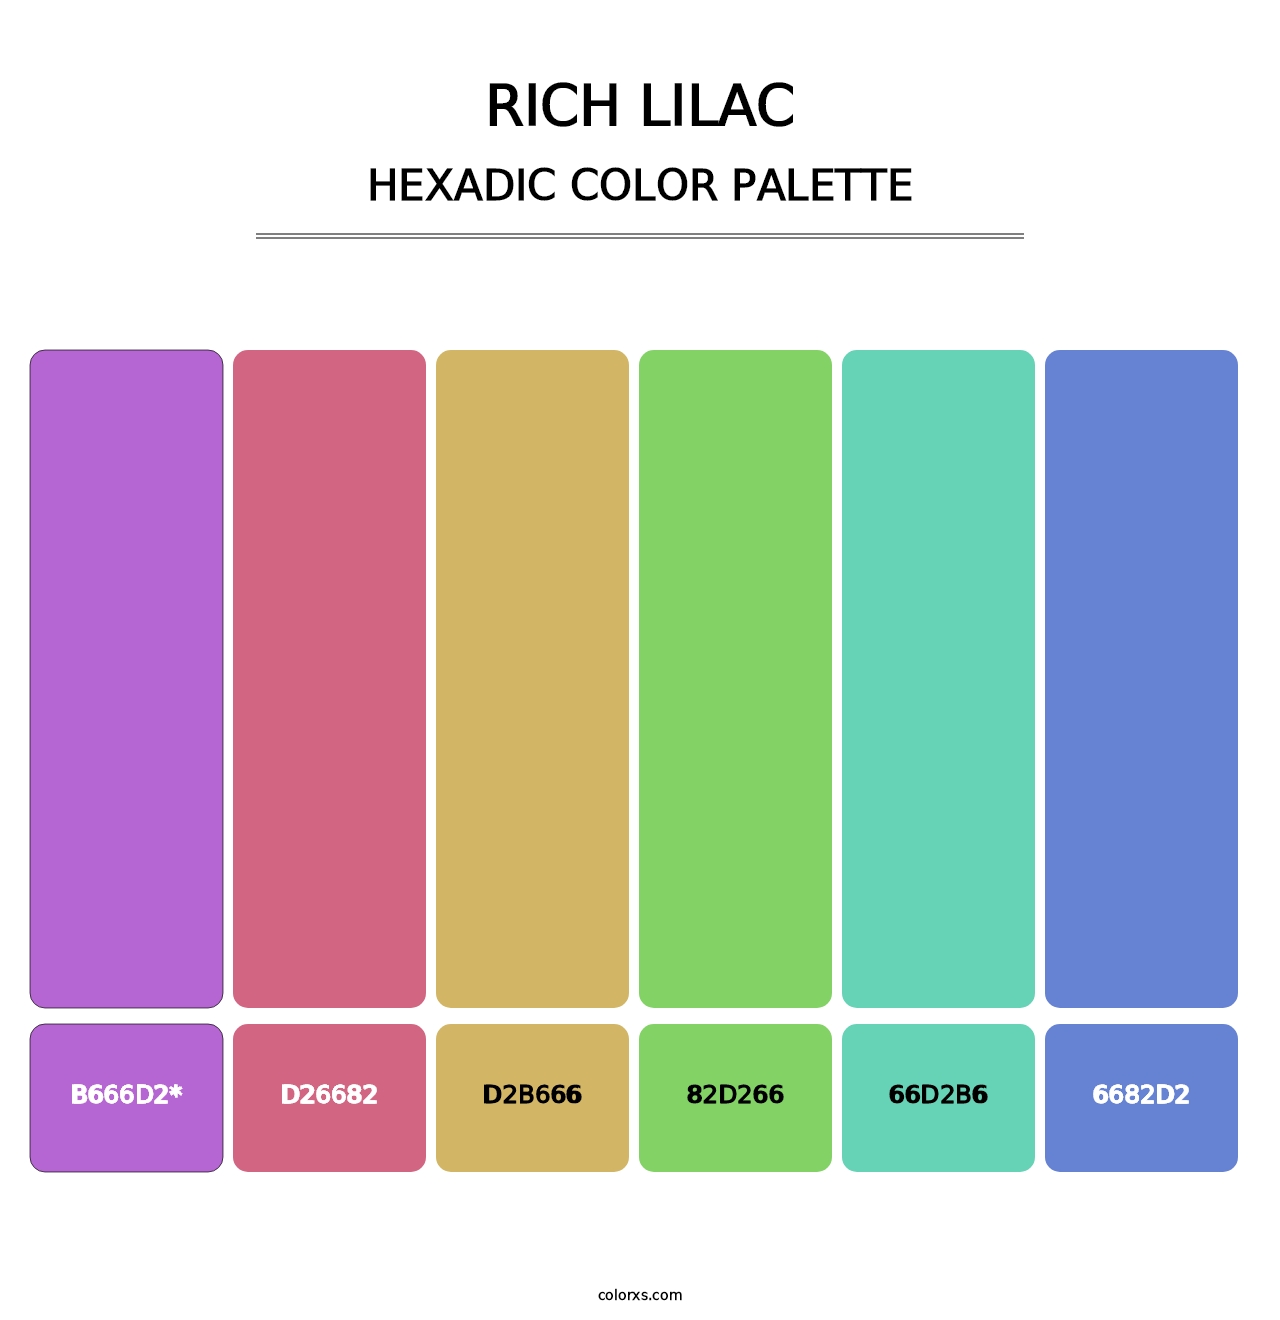 Rich Lilac - Hexadic Color Palette